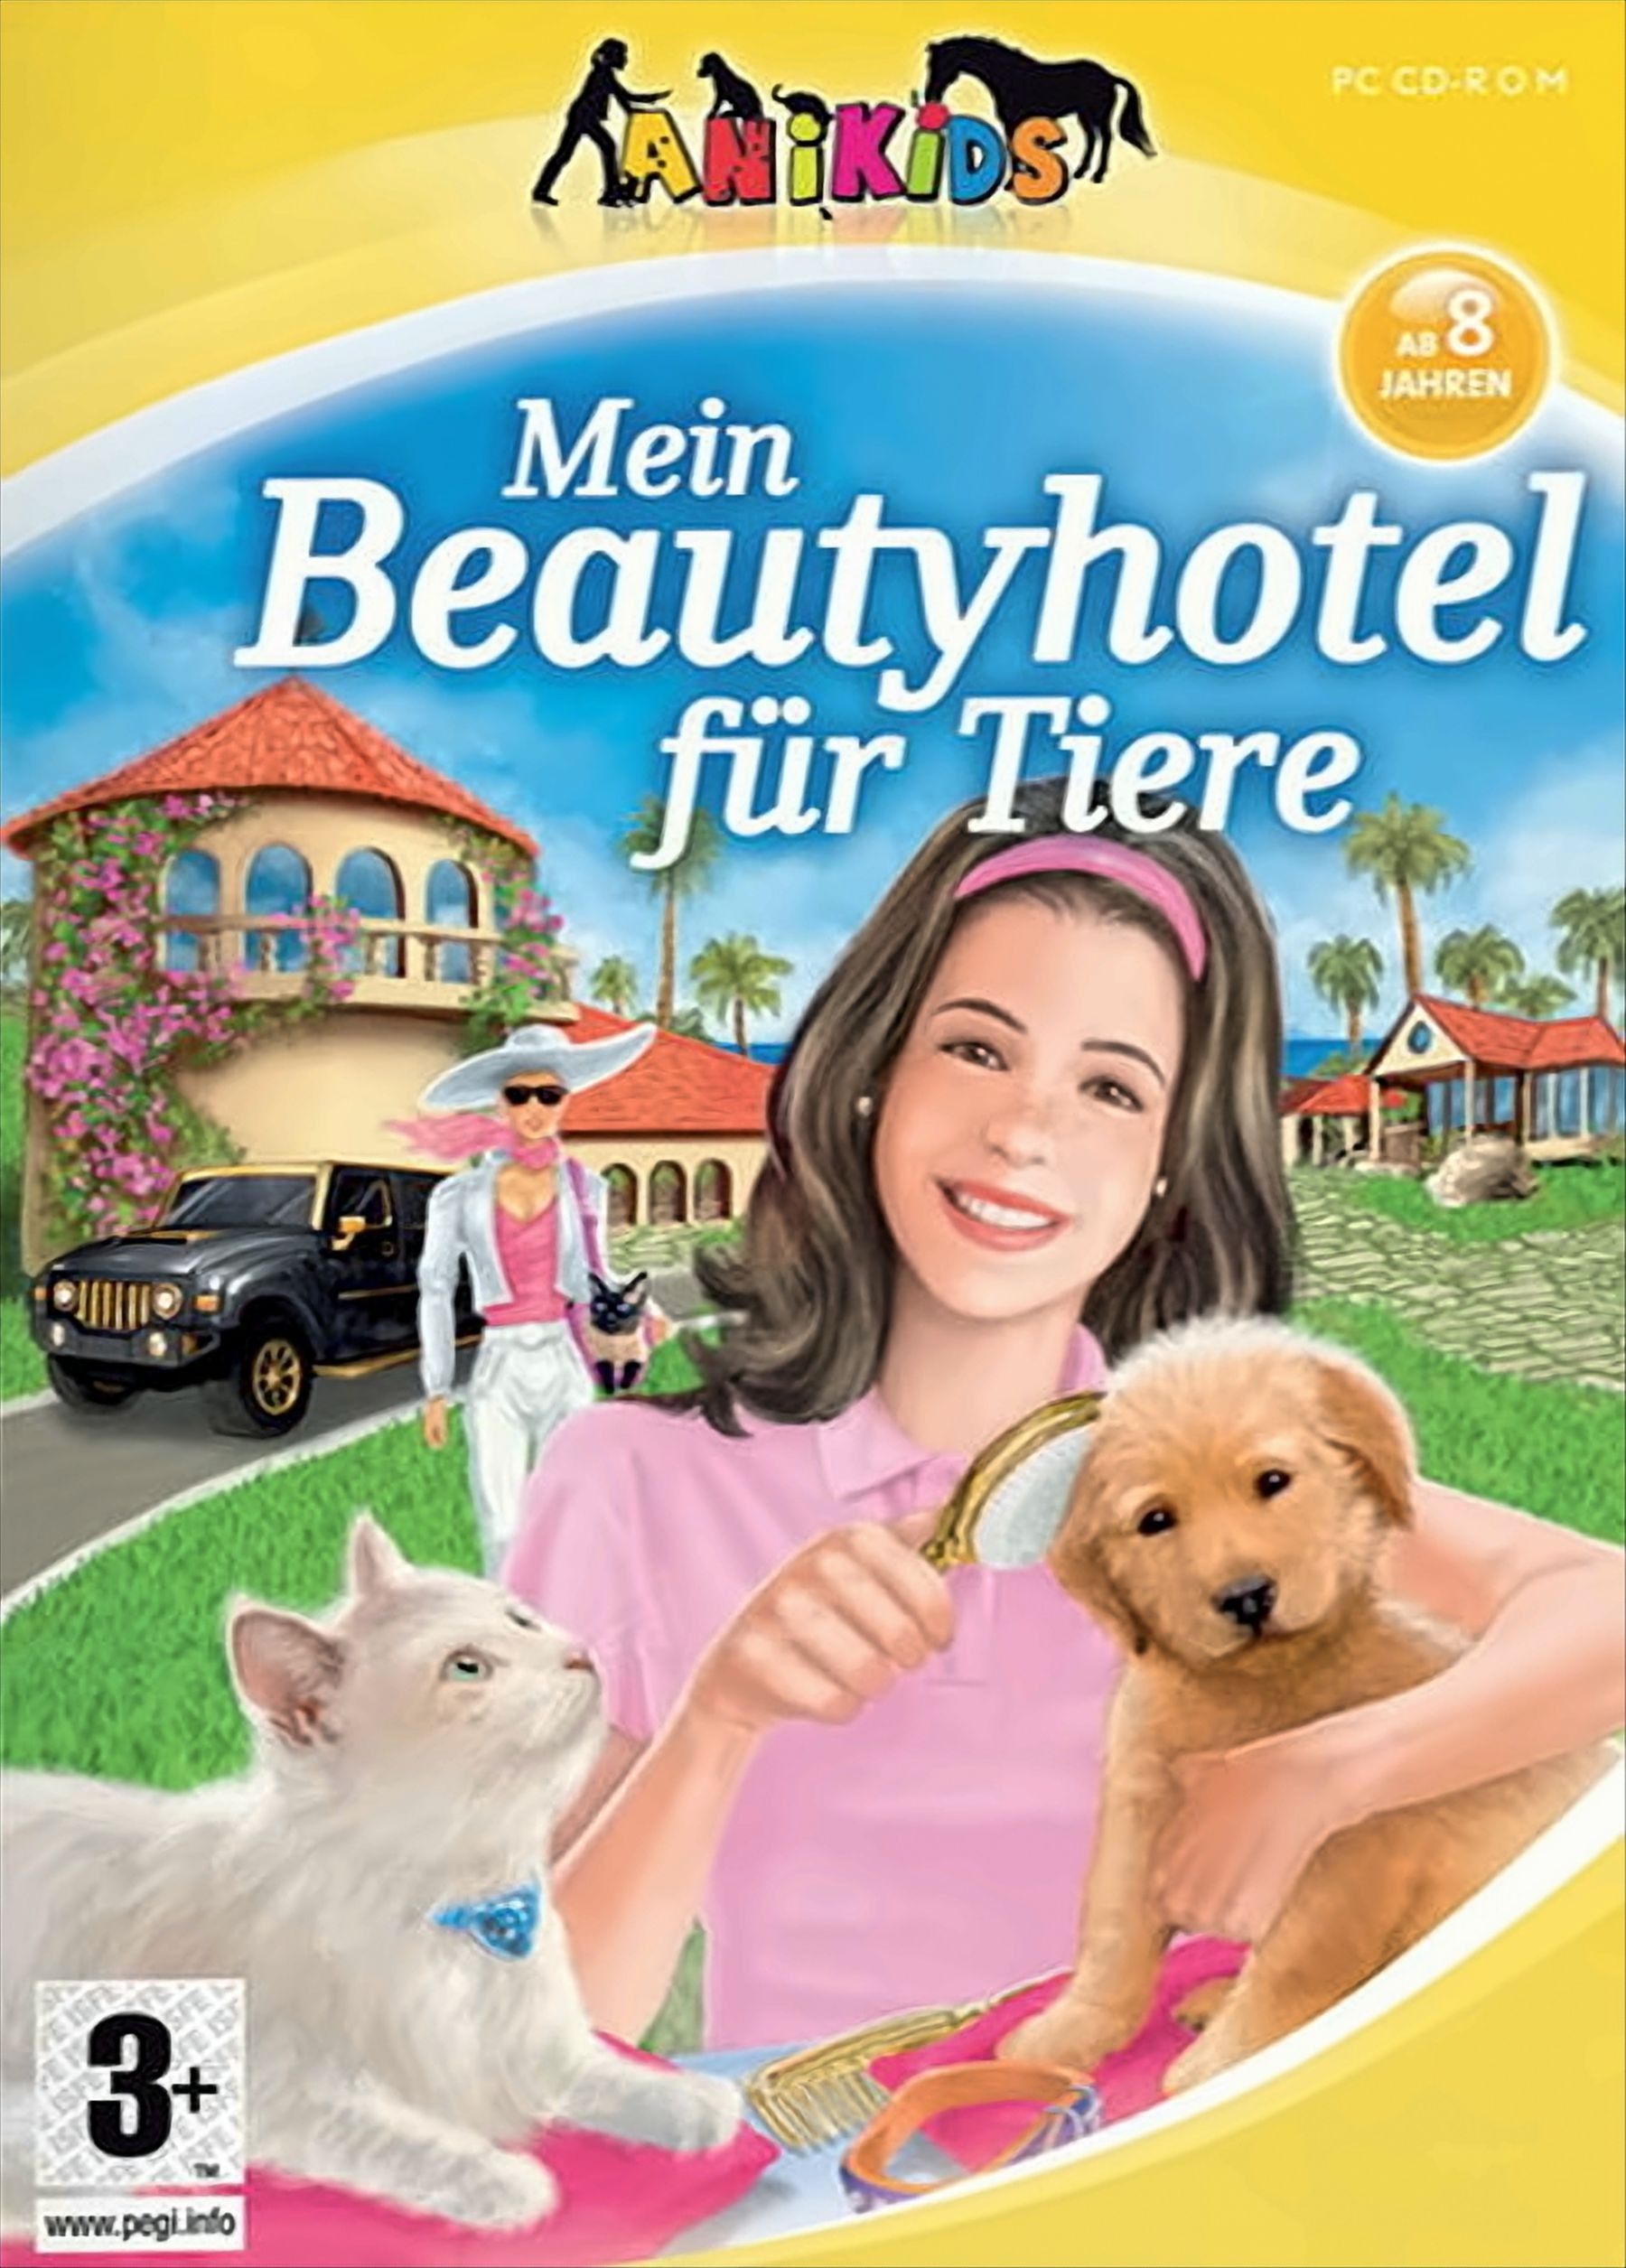 - [PC] Beautyhotel Mein für Tiere